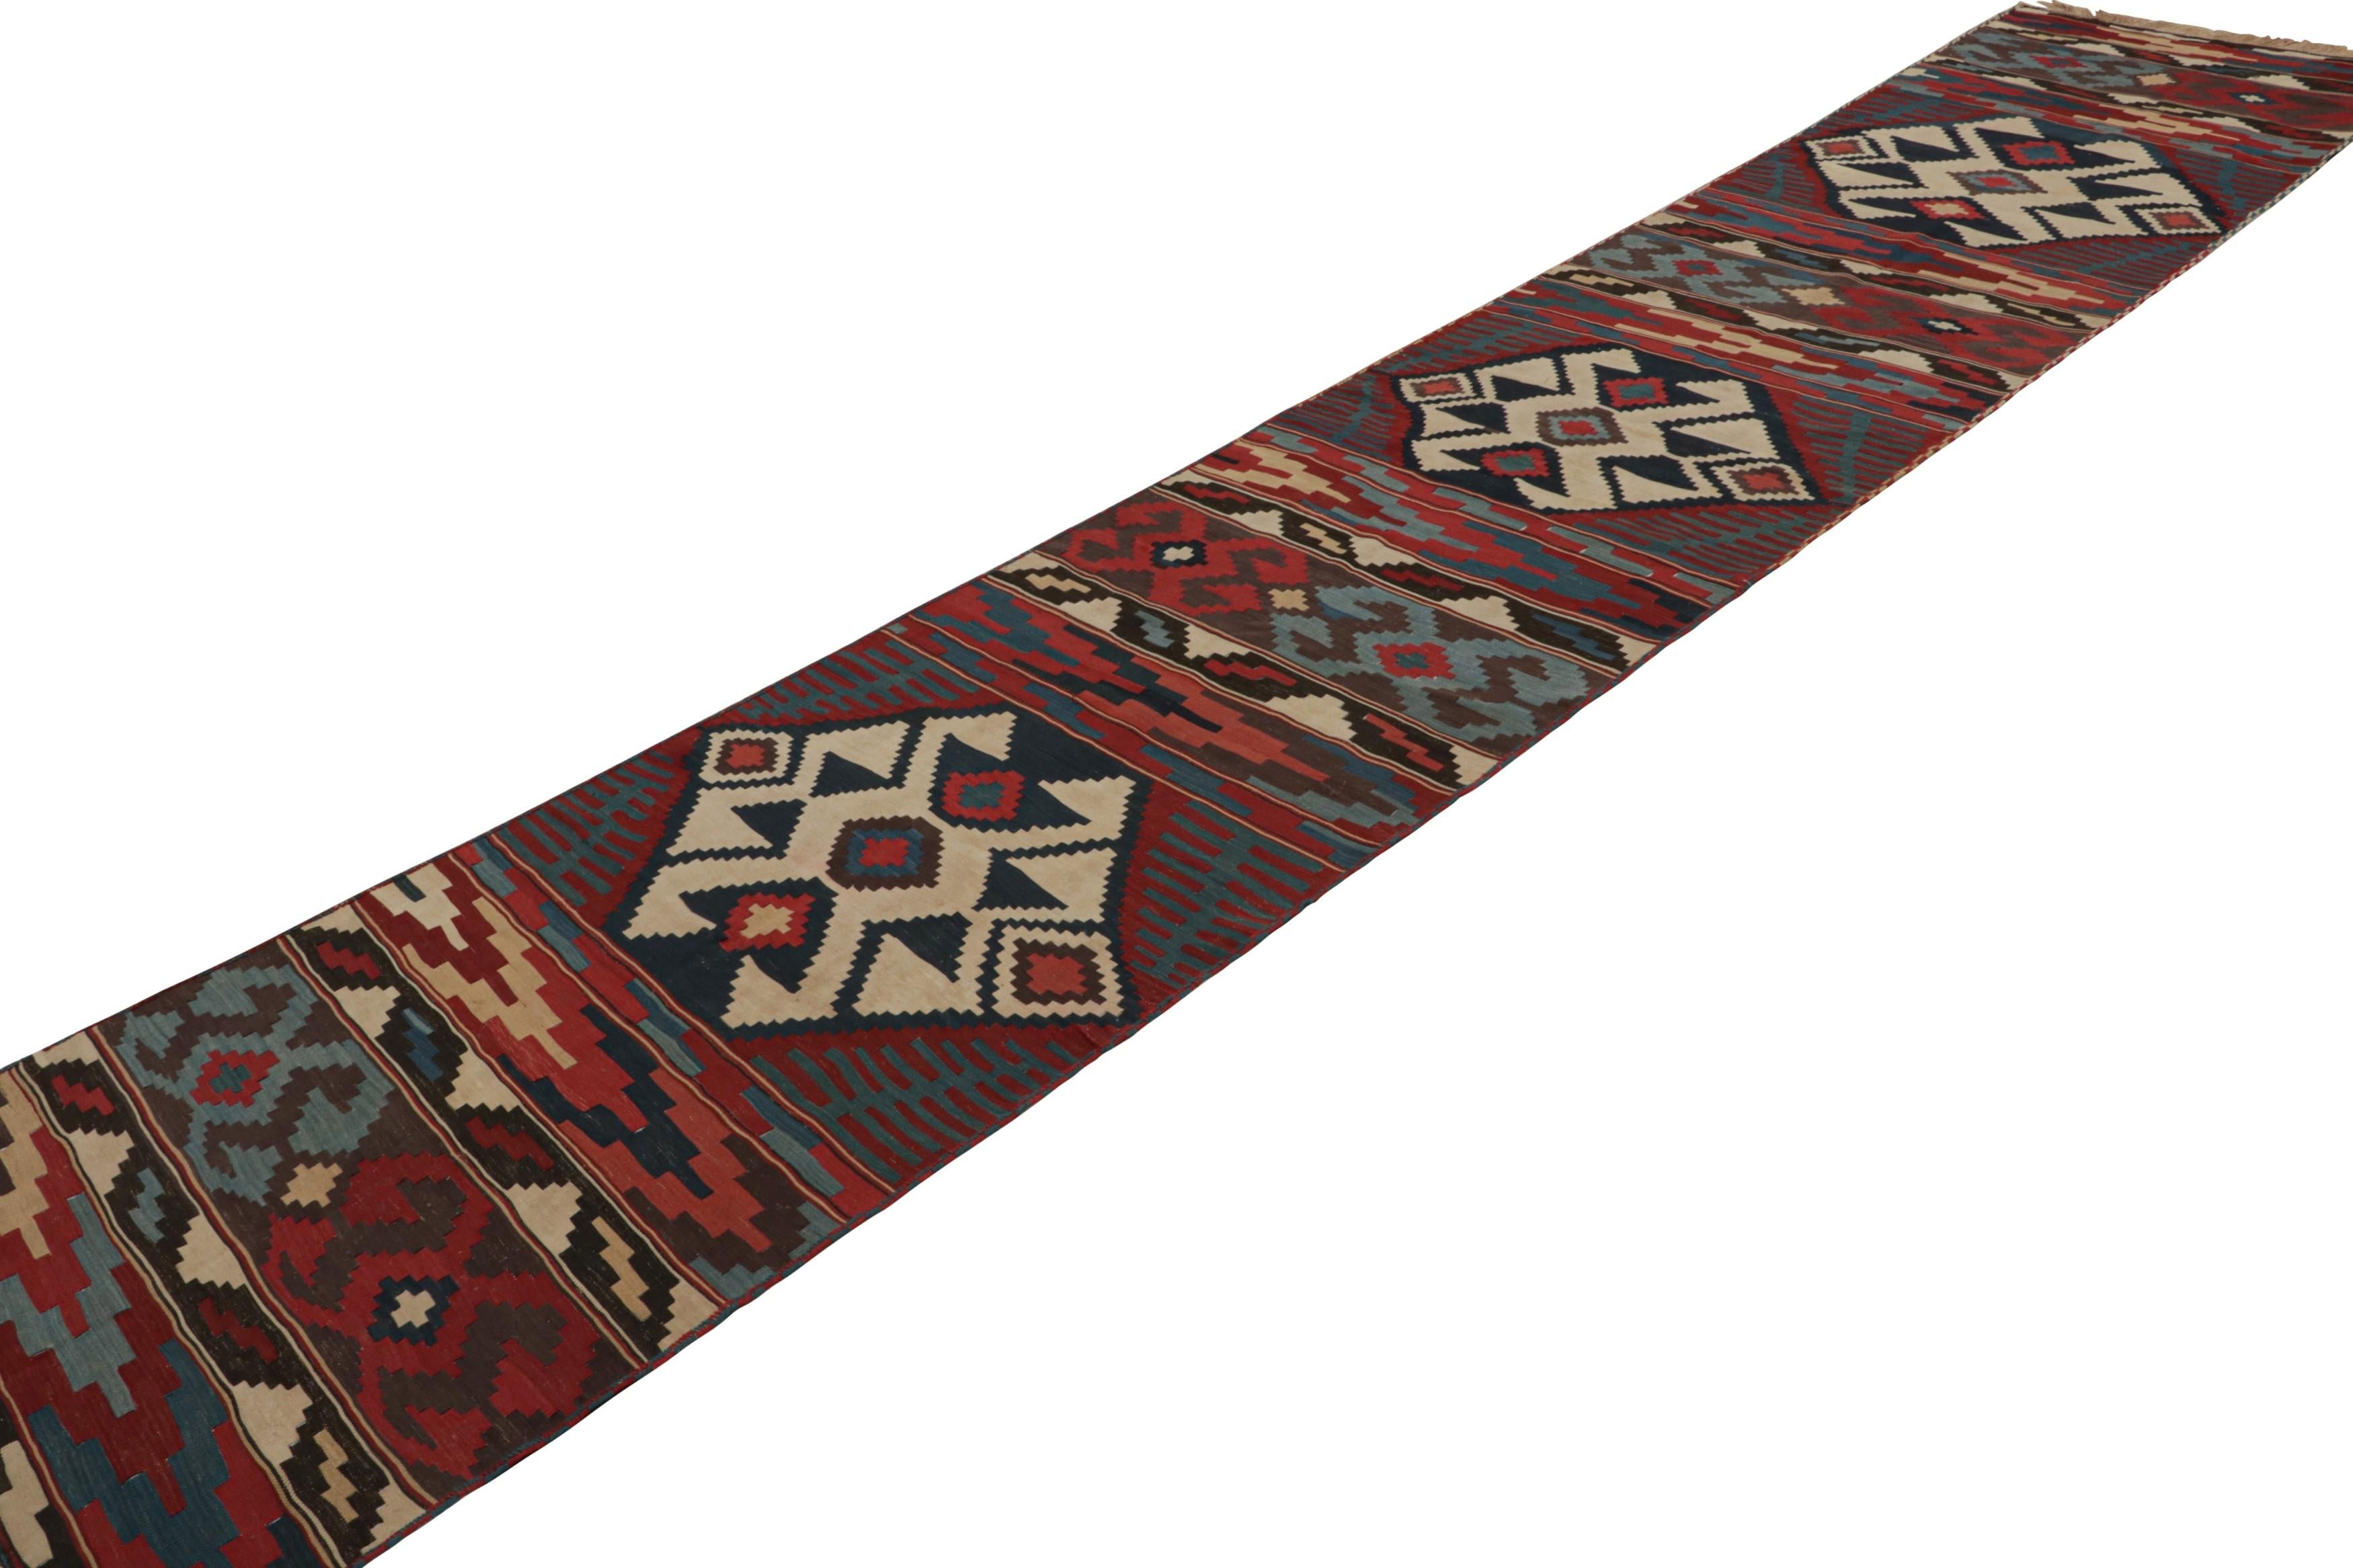 Ce tissage plat provient d'une rare paire de tapis de course 3x17 persans vintage Rug & Kilim, noués à la main en laine vers 1950-1960. Ces chemins de table tribaux sont presque identiques en taille et en design, avec des motifs géométriques dans